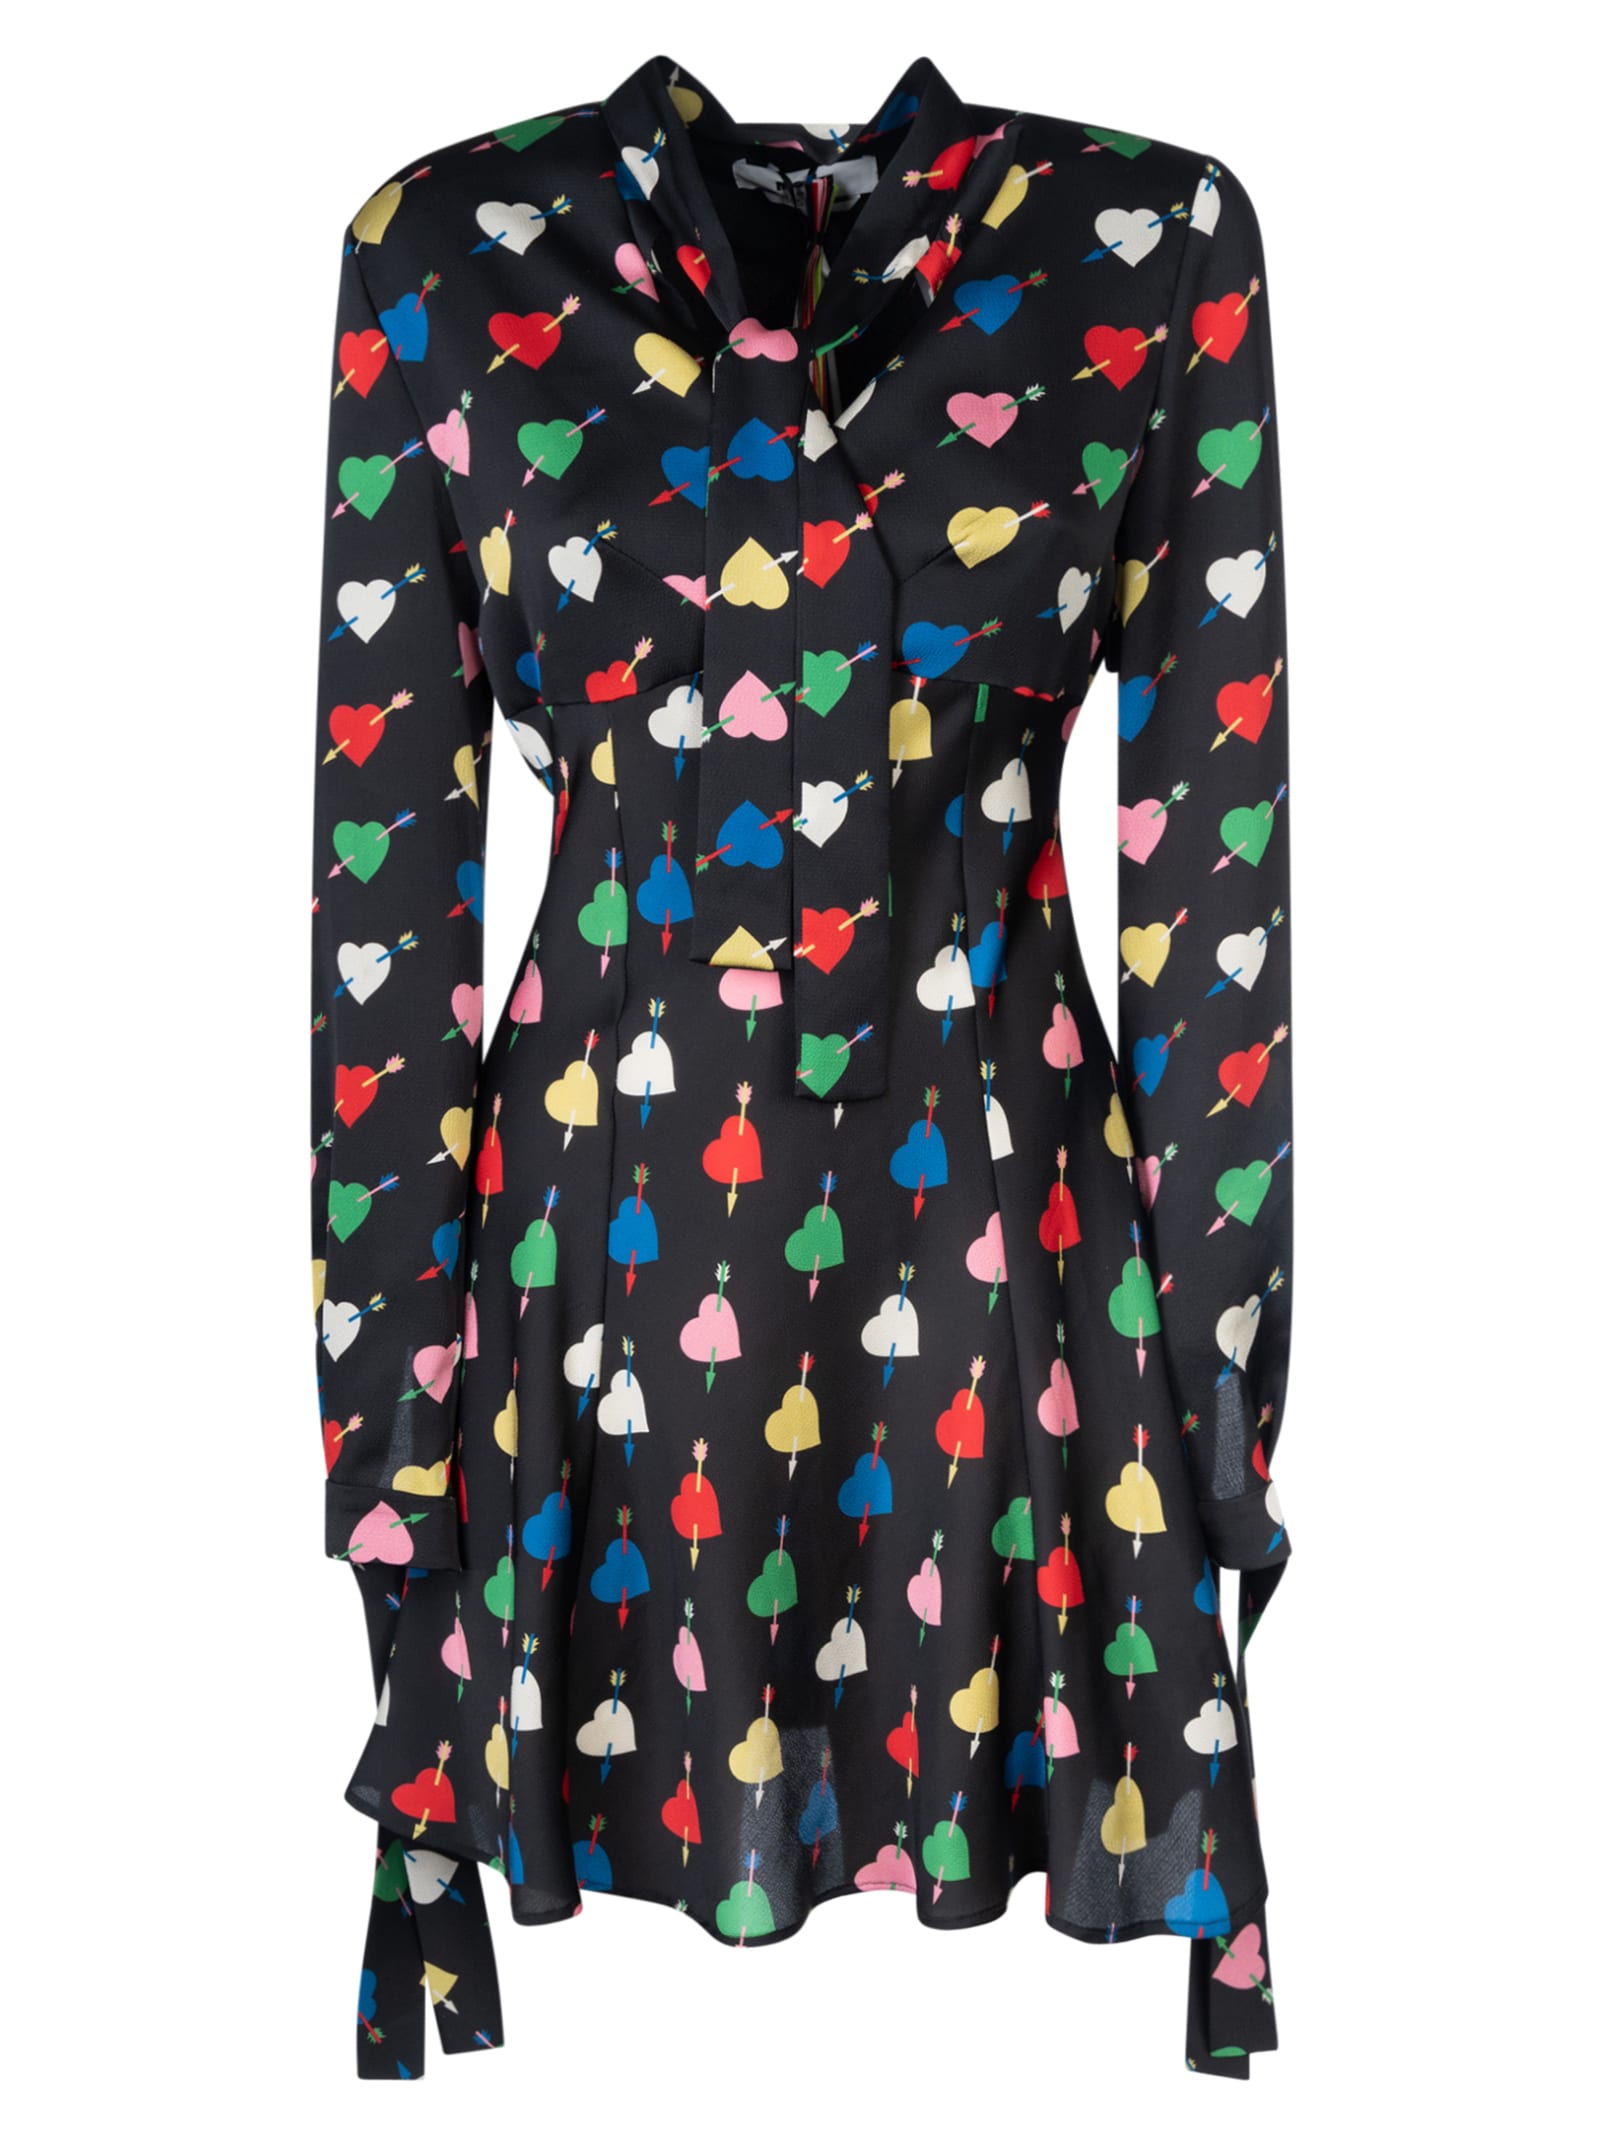 Black Mini Dress With arrowed Heart Print Motif